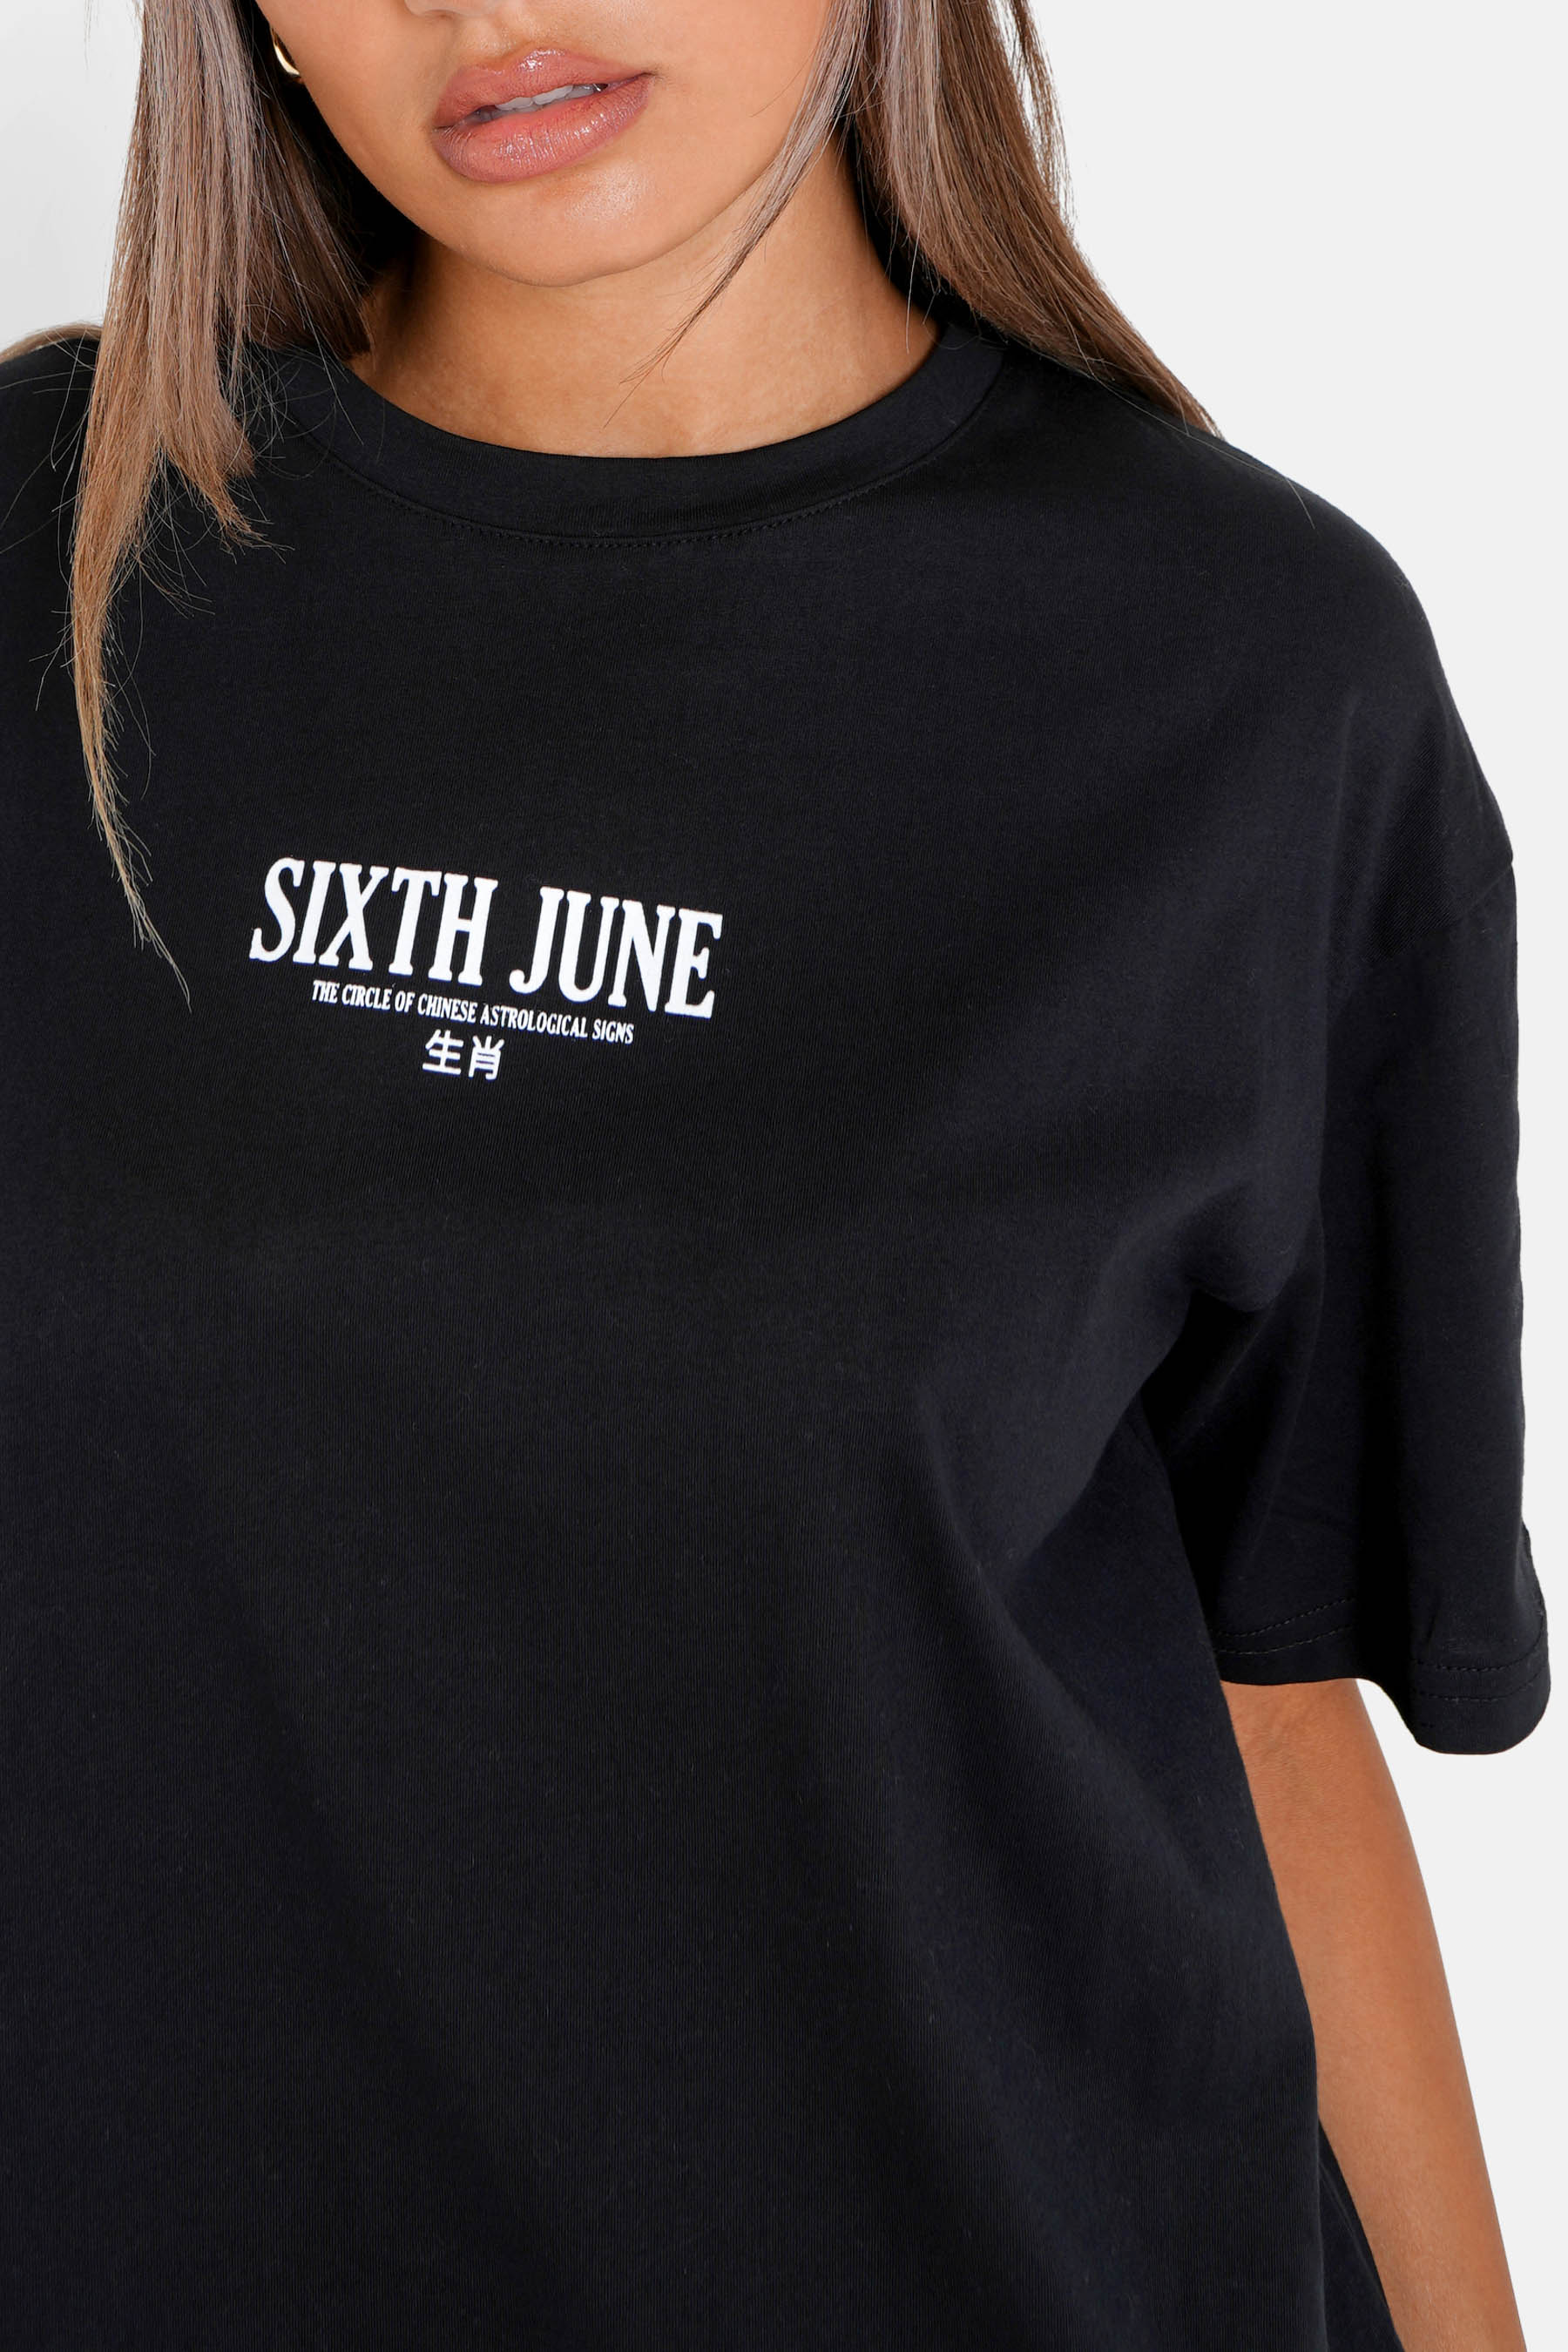 Sixth June - T-shirt astrologie chinese long Noir